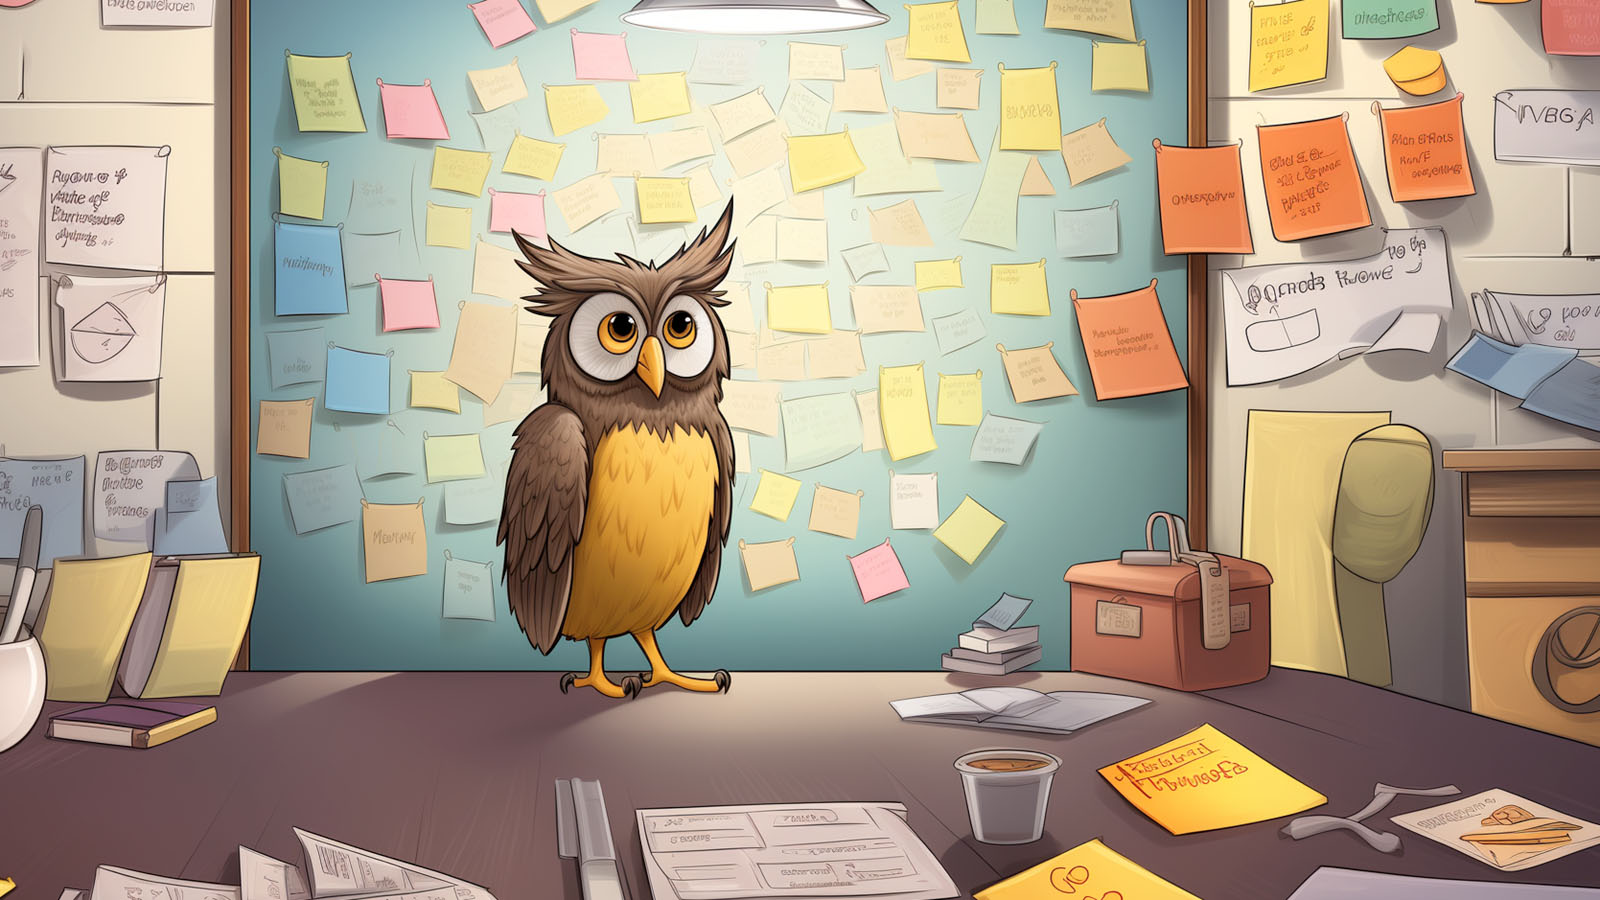 Cartoon owl brainstorming business name ideas